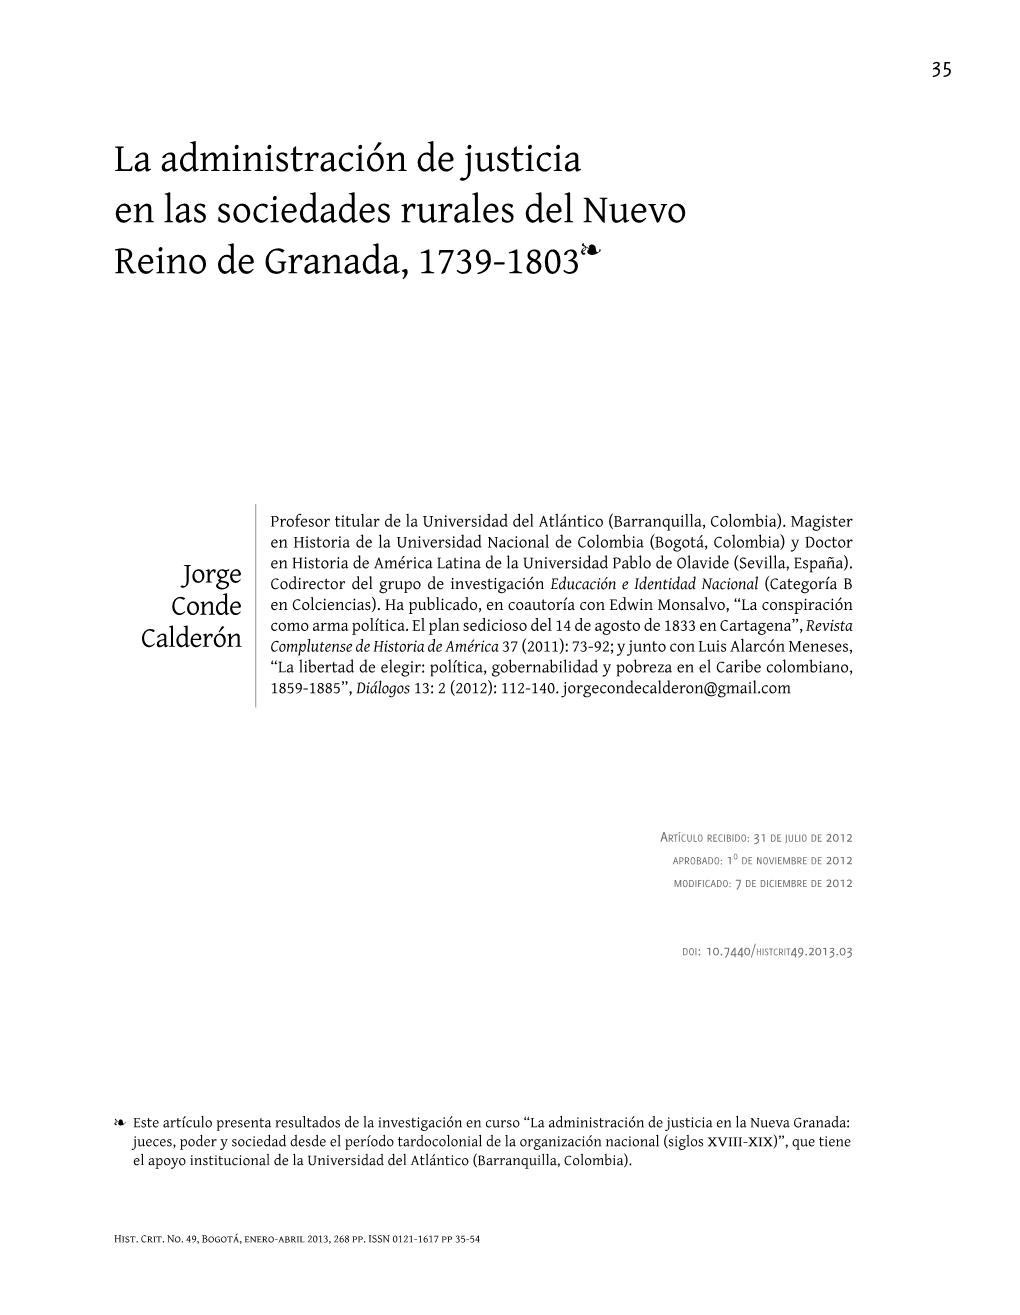 La Administración De Justicia En Las Sociedades Rurales Del Nuevo Ï Reino De Granada, 1739-1803